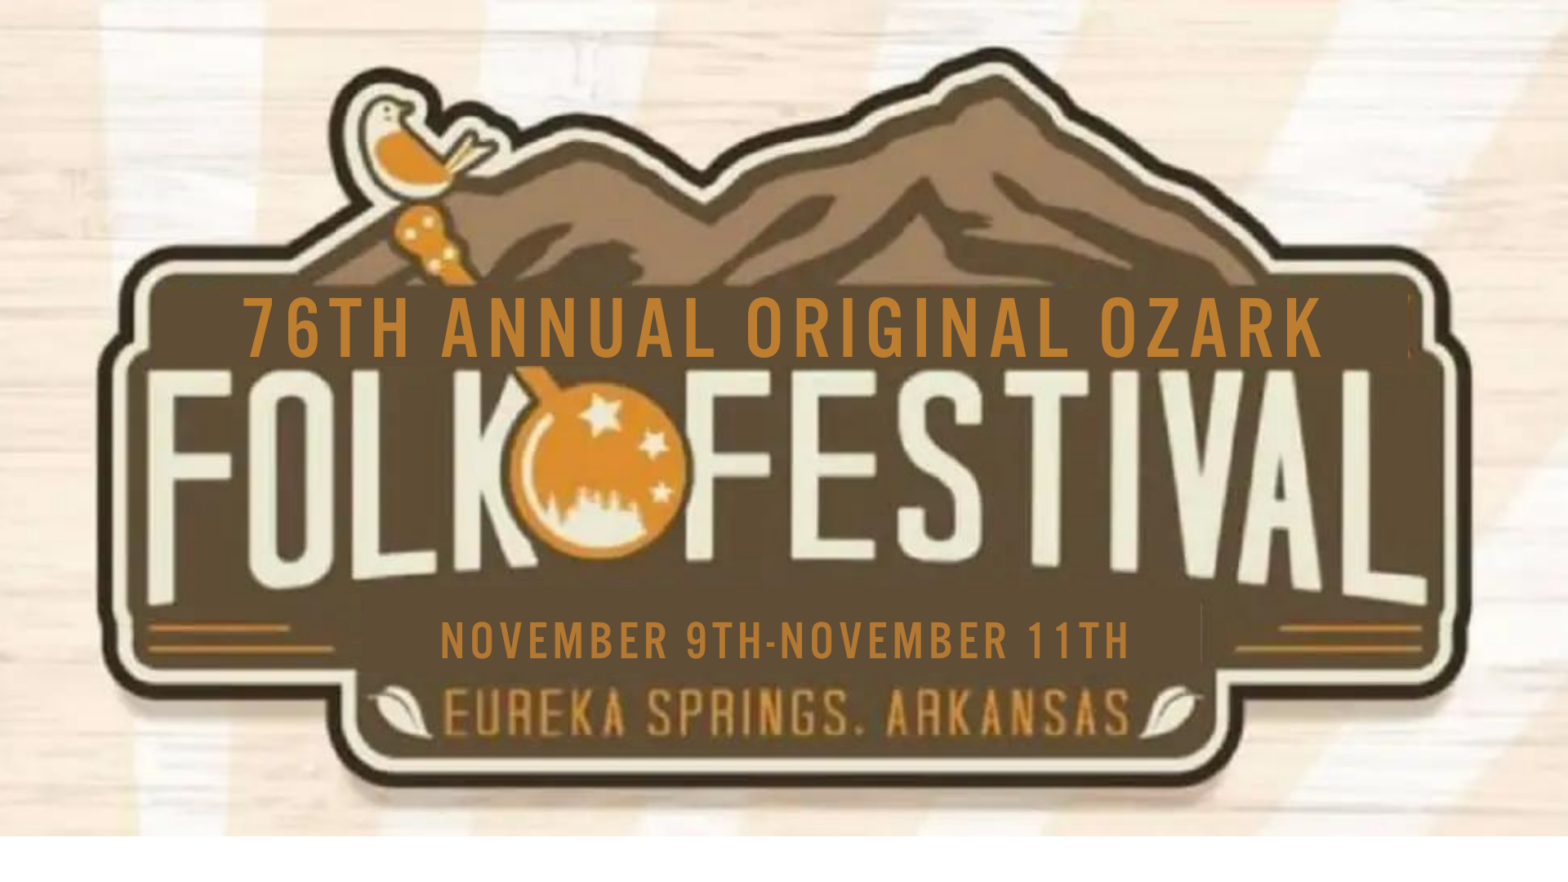 Ozark Folk Festival Eureka Springs, Arkansas